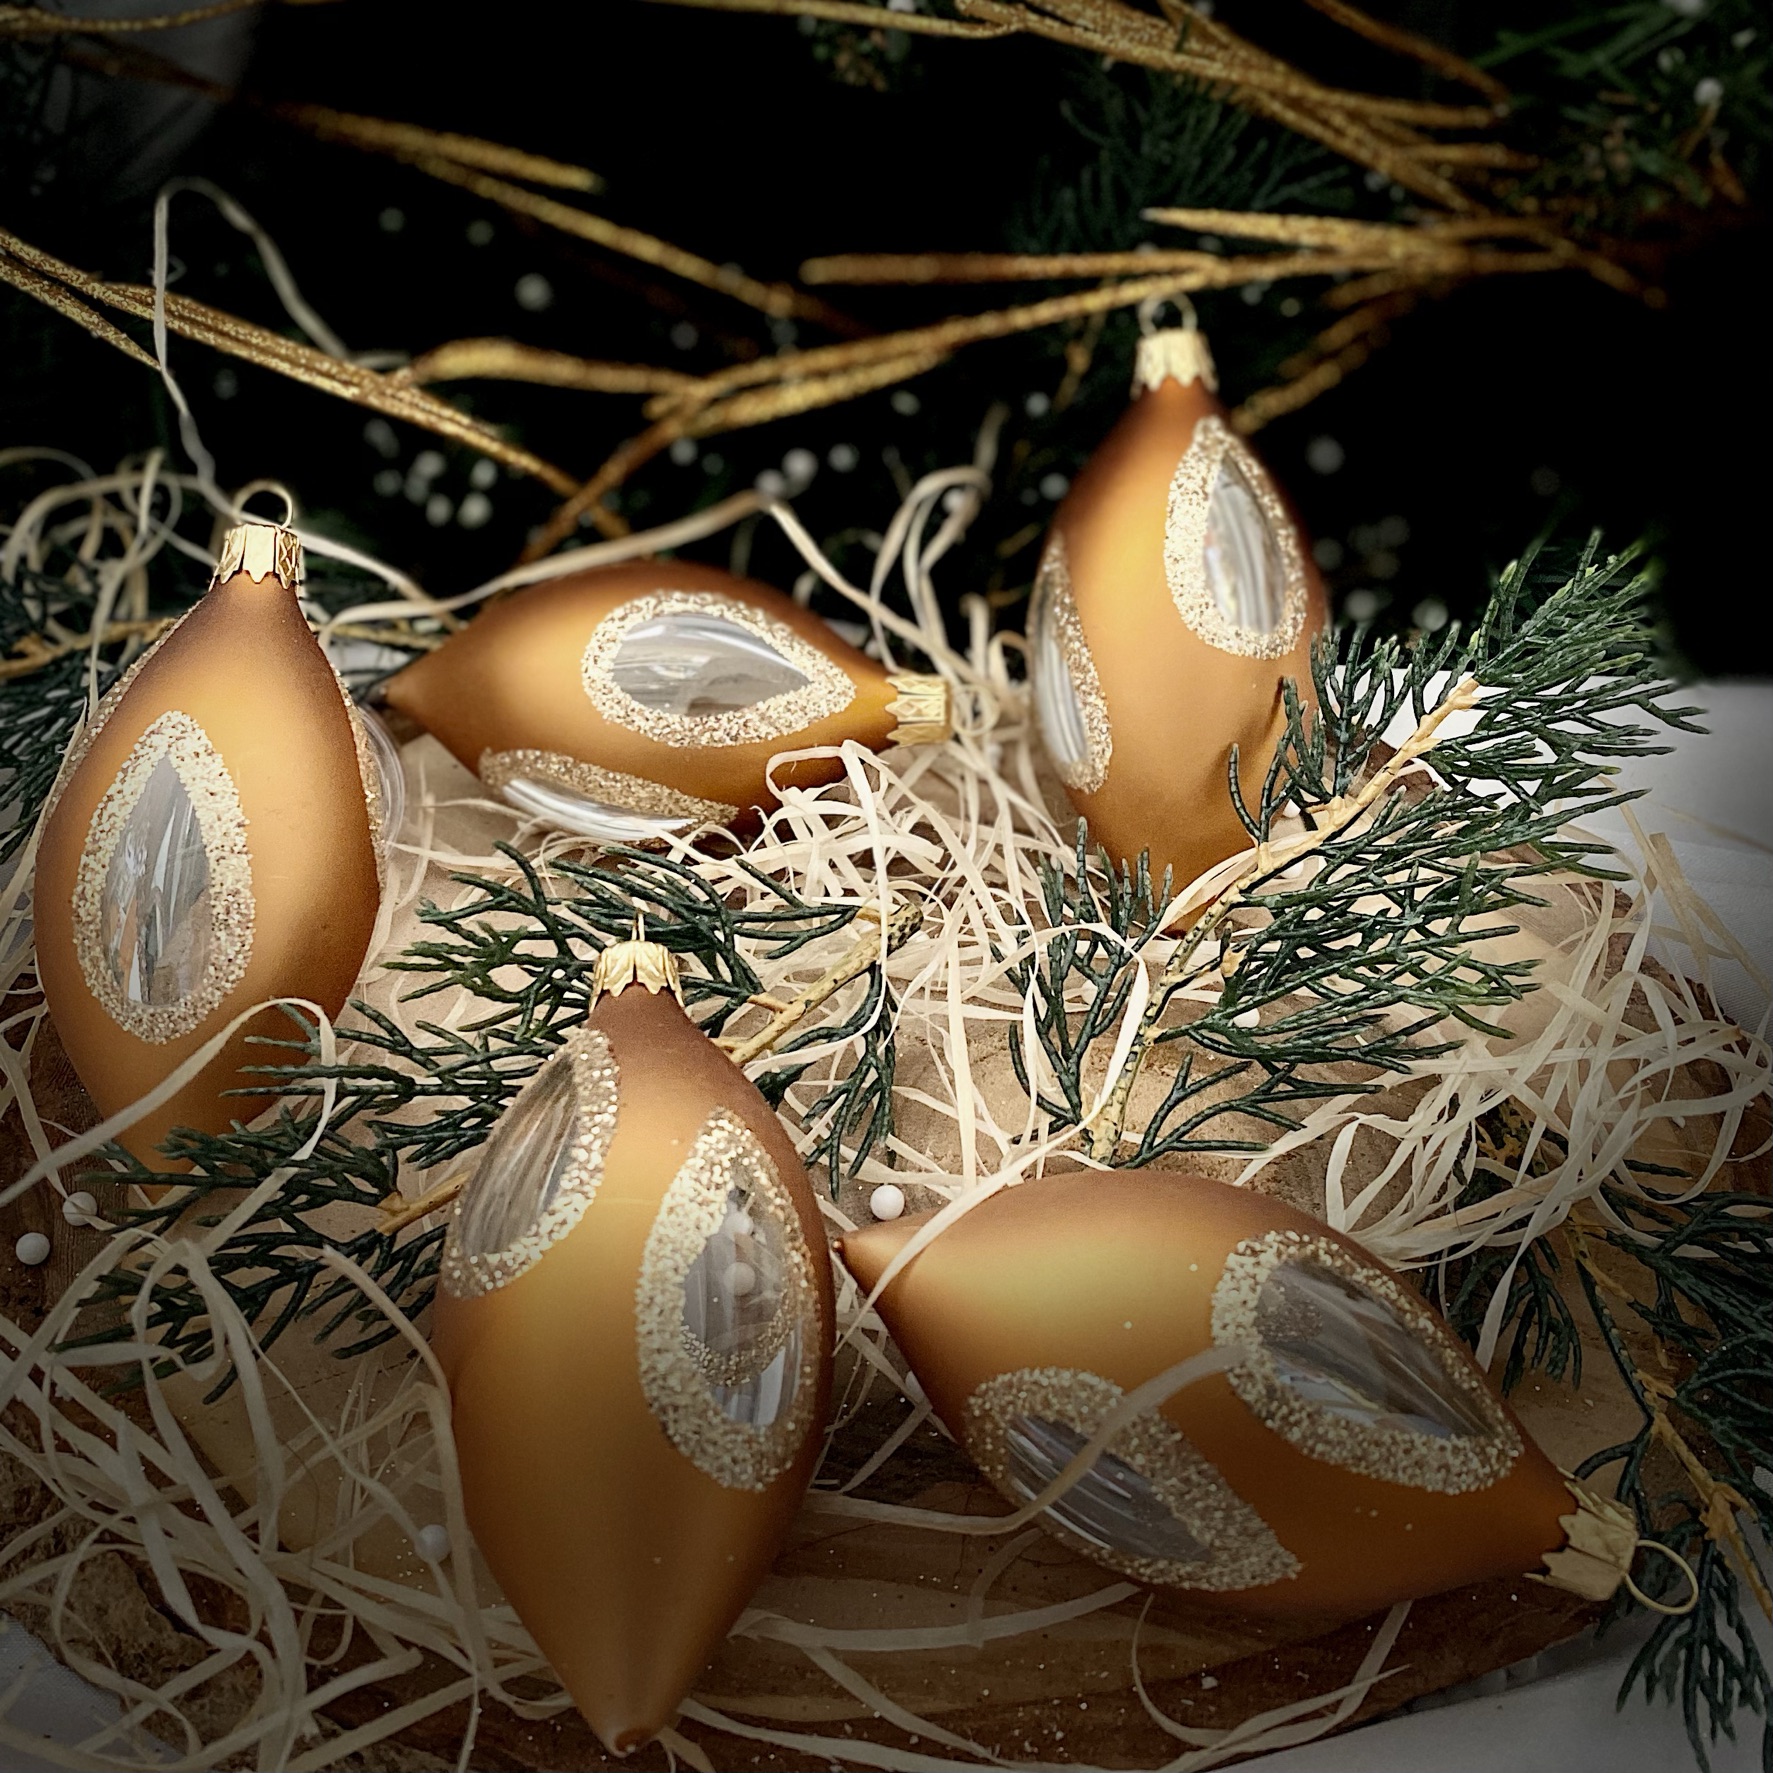 IRISA Sada skleněných vánočních baněk SLZY 5ks Balení: 5ks, Barva: hnědá, Velikost: 8x4 cm